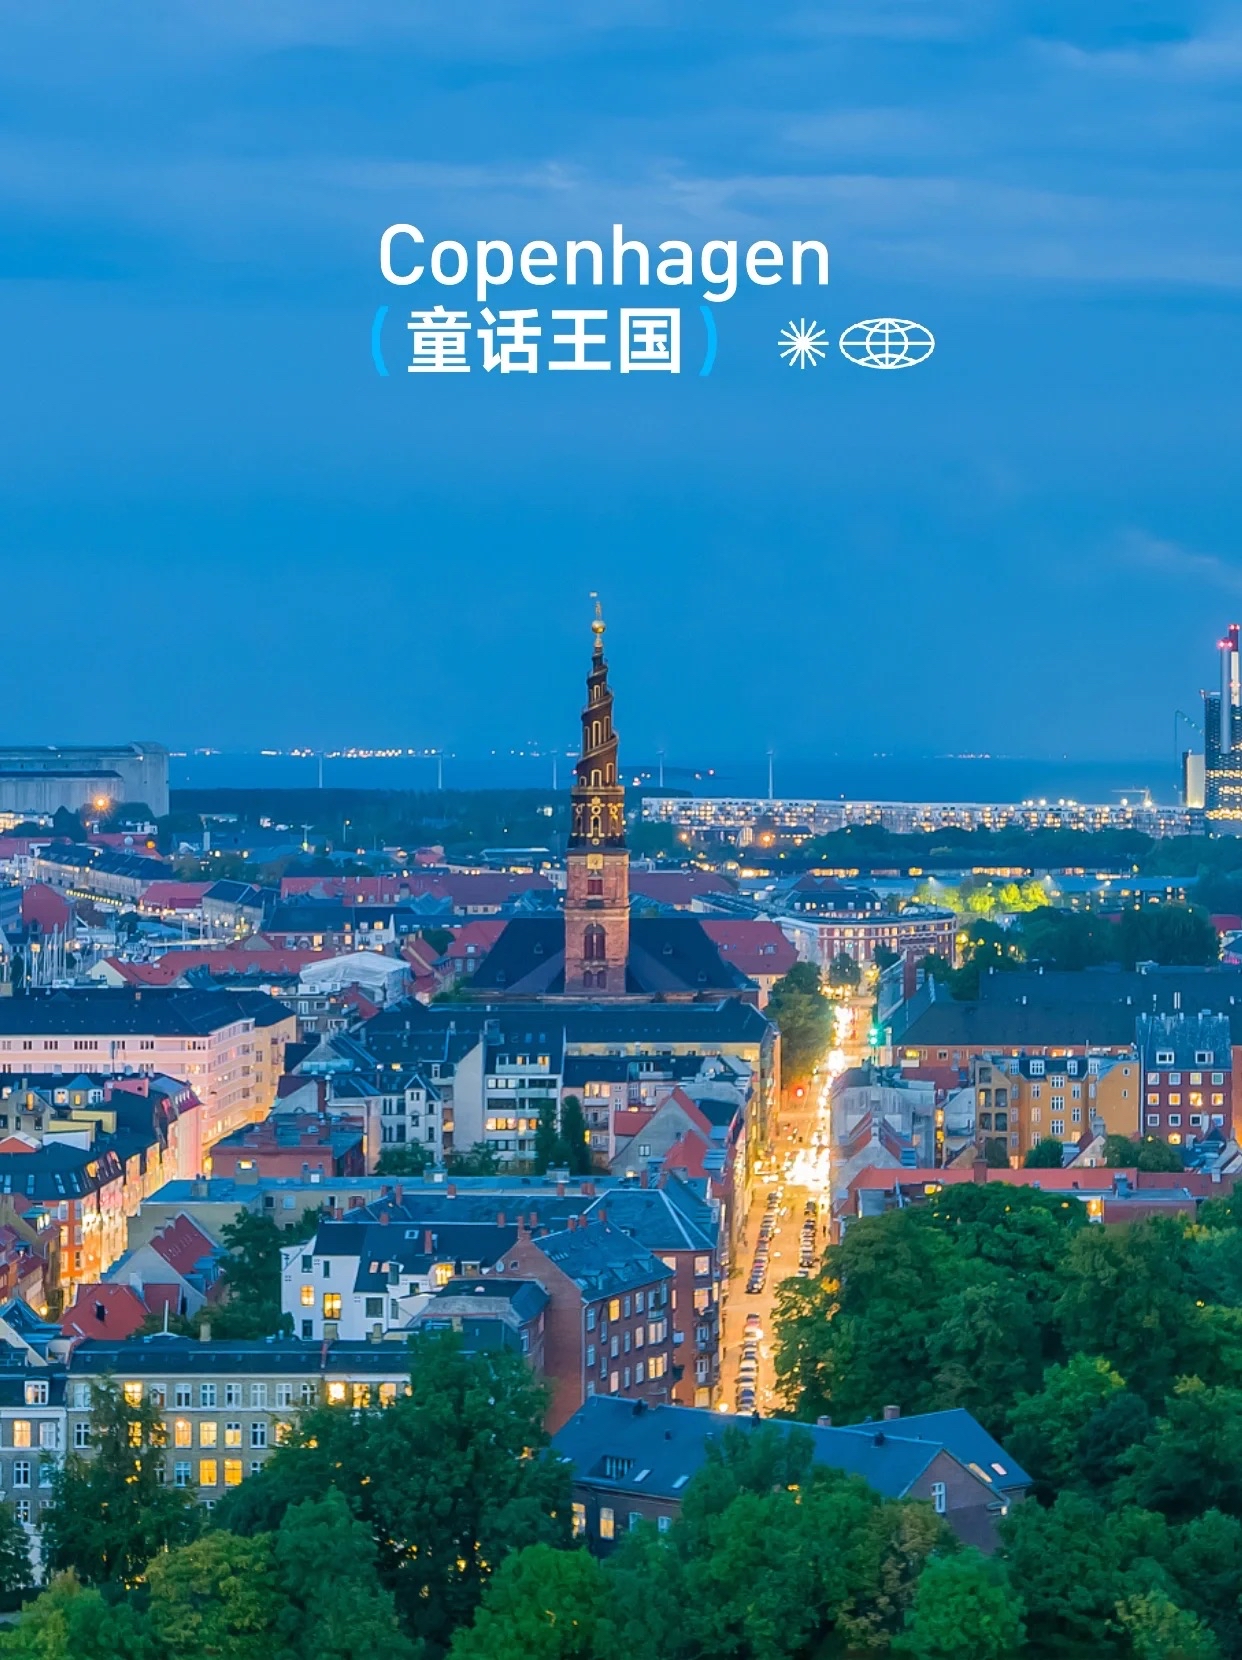 丹麦•哥本哈根 |一座童话中的王国 《海的女儿》 《丑小鸭》 《卖火柴的小女孩》 .... 是丹麦作